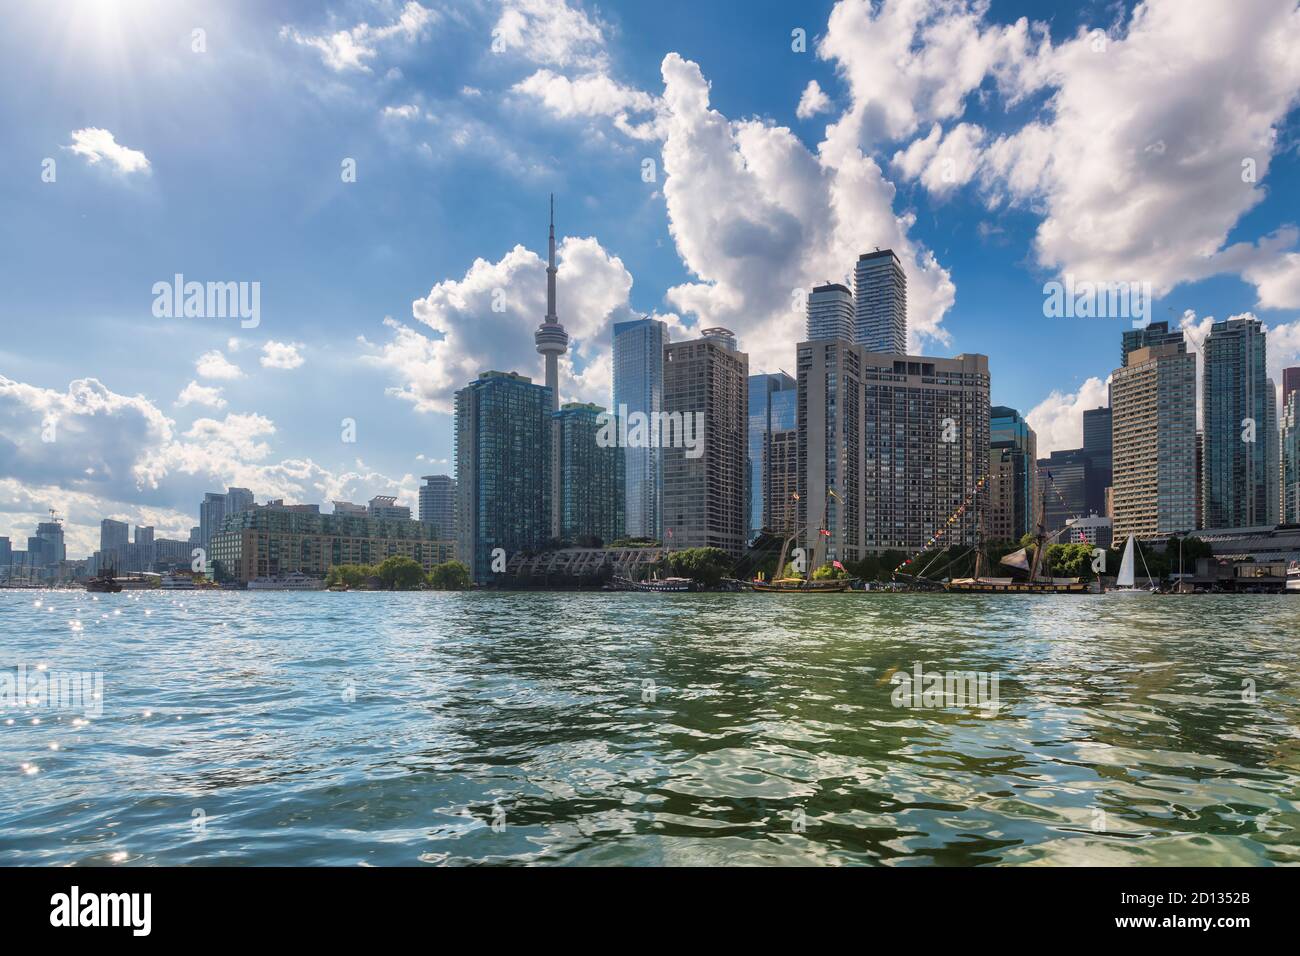 Toronto city skyline, Ontario lake, Toronto, Canada Stock Photo